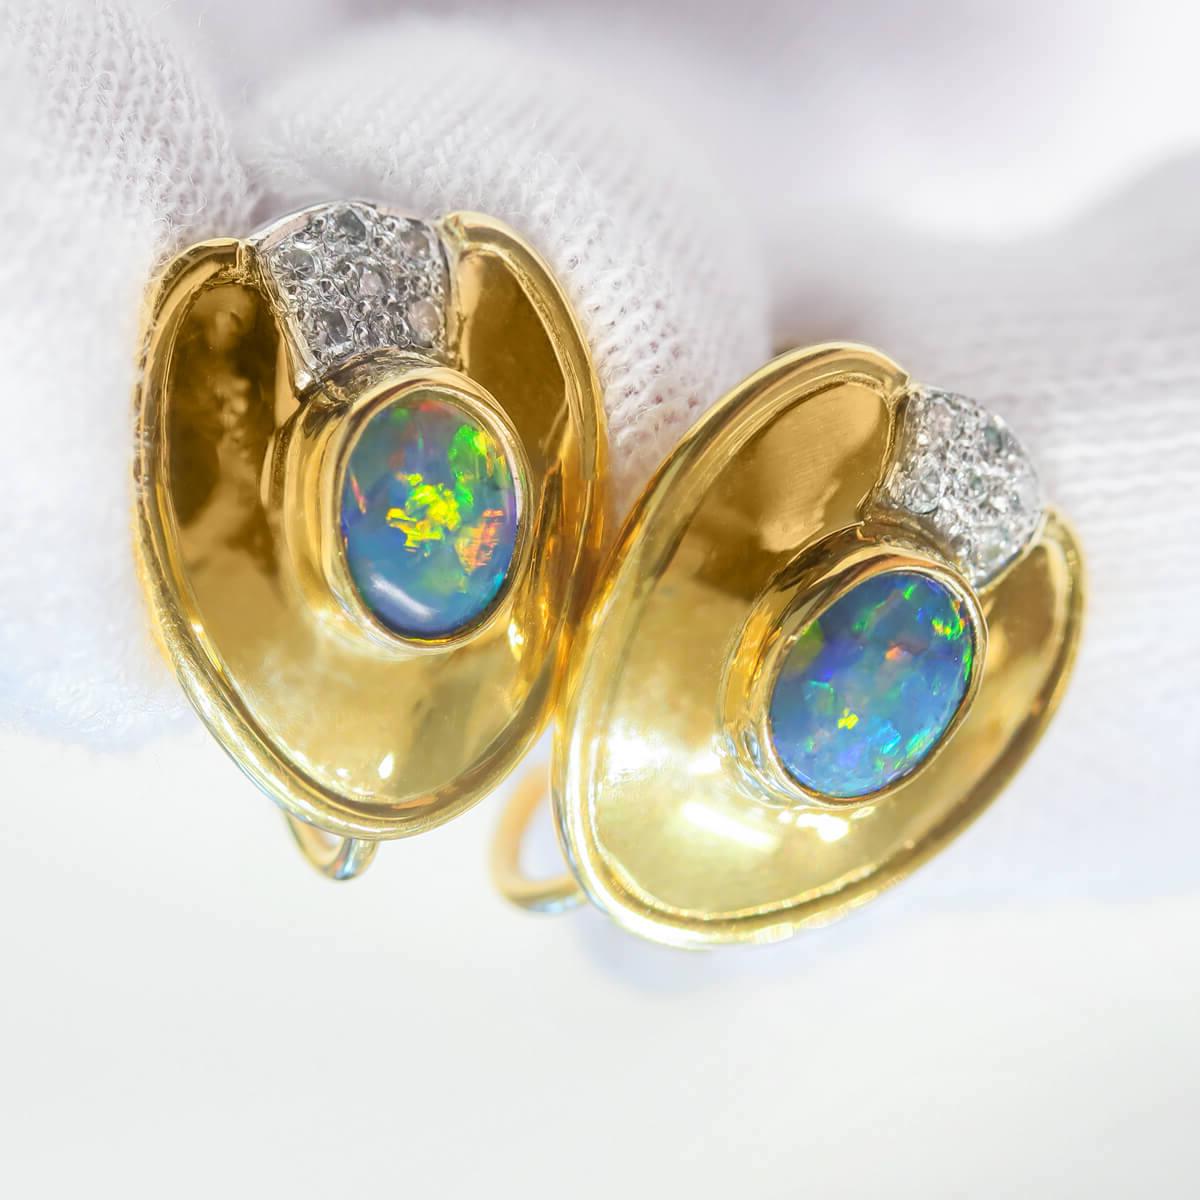 Cabochon 1.44 Carat Australian Black Opal, Diamond & 18k Gold Earrings For Sale